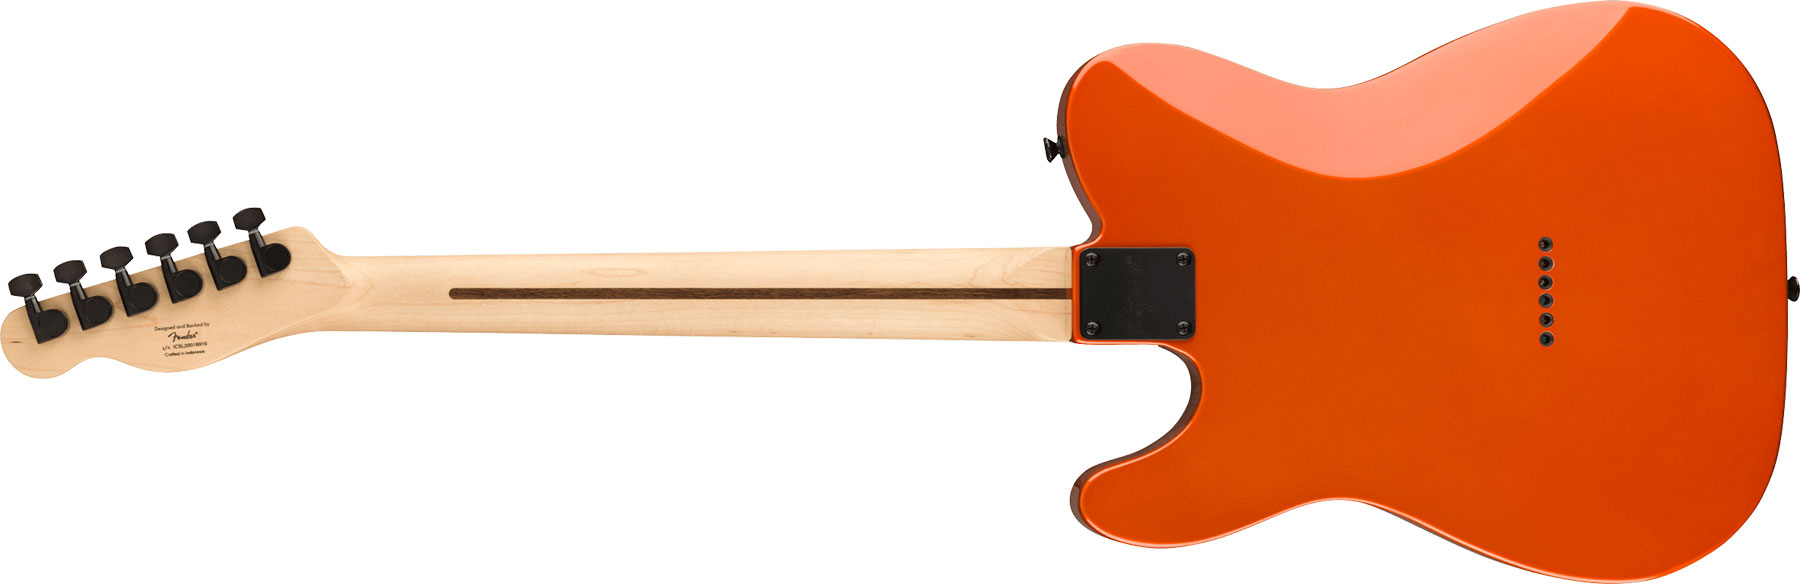 Squier Tele Affinity Hh Fsr 2h Ht Lau - Metallic Orange - Televorm elektrische gitaar - Variation 1